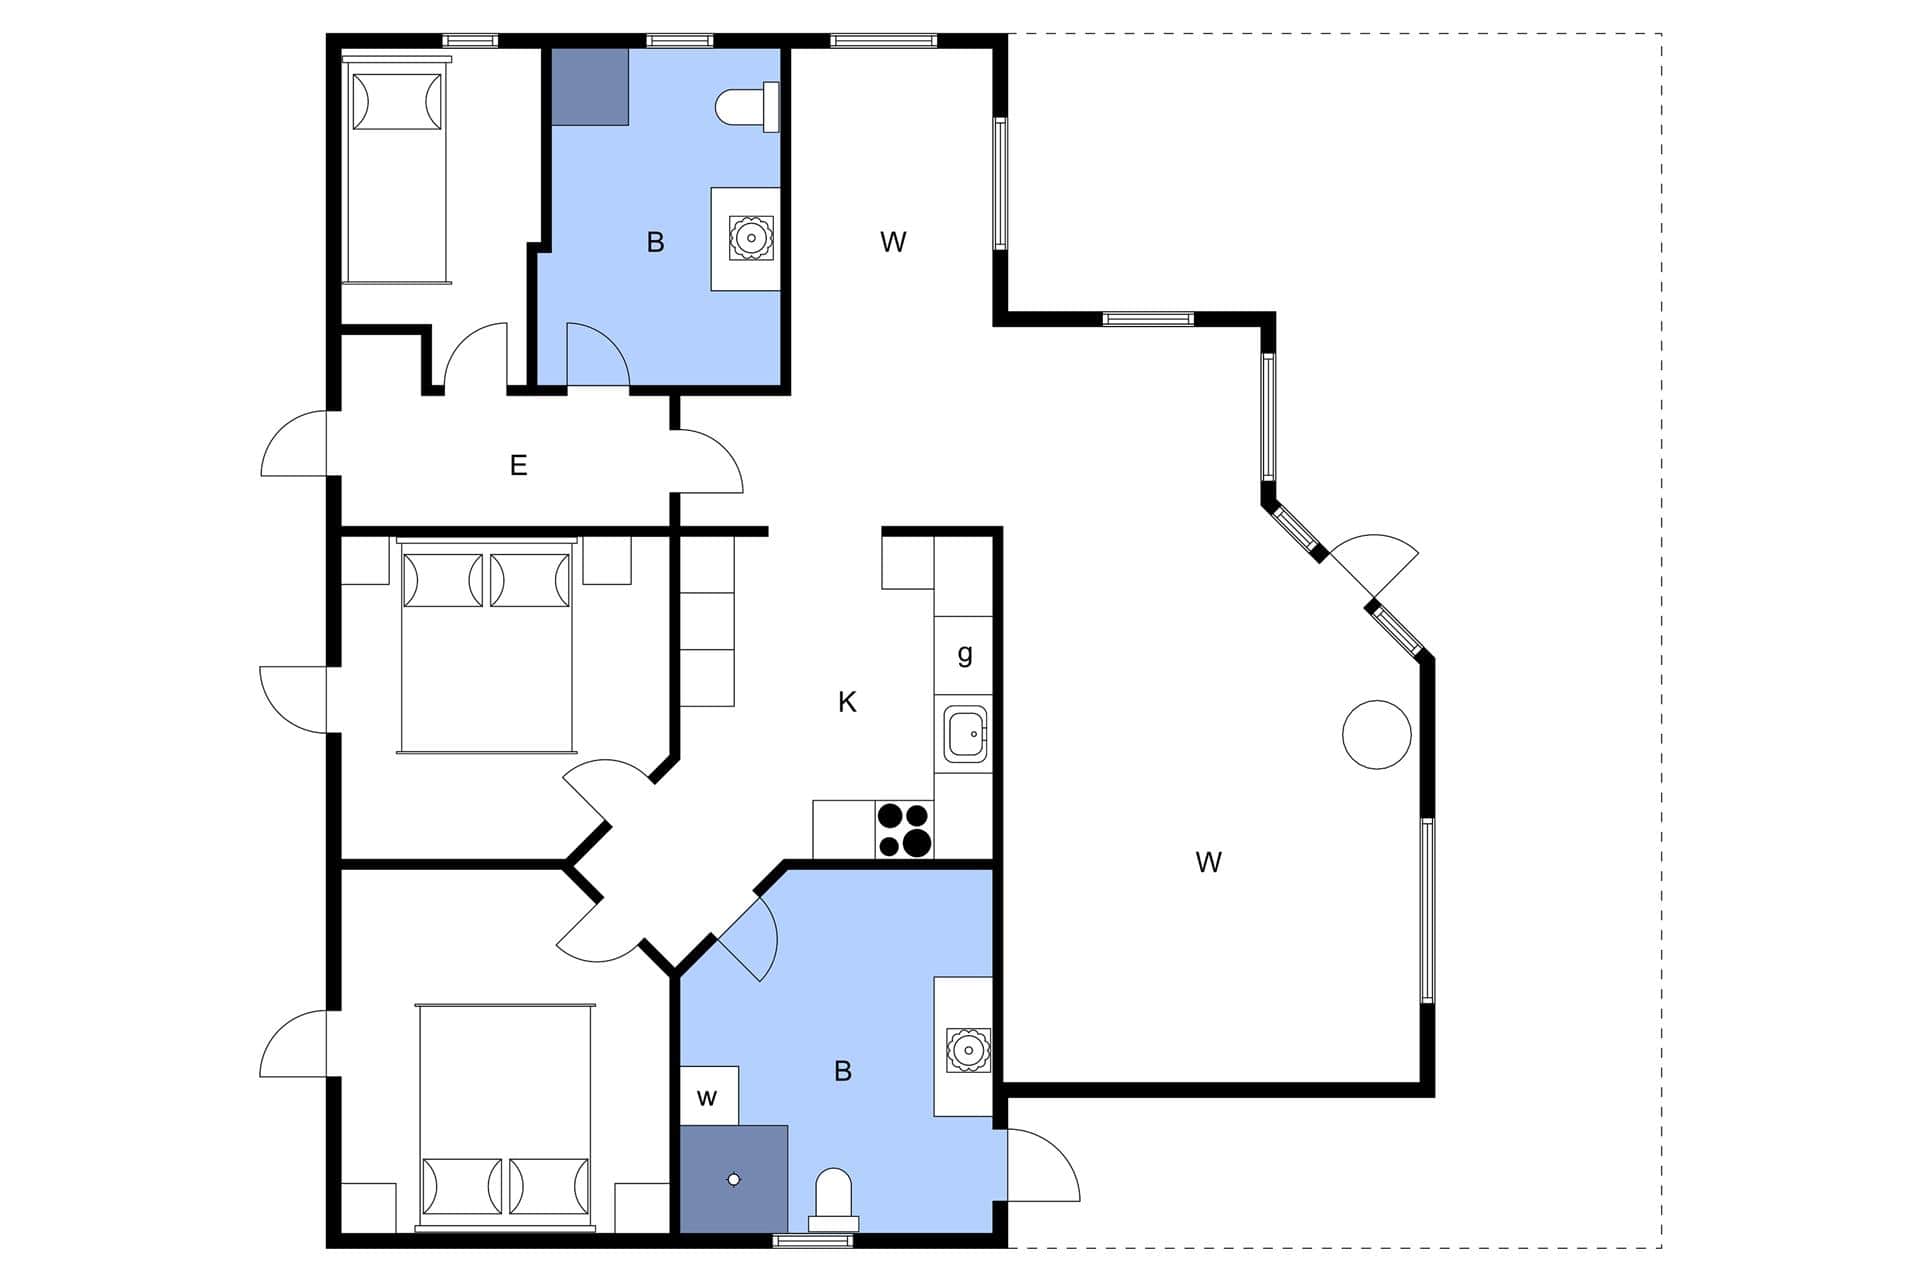 Interior 7-3 Holiday-home M64271, Skrillinge Strand 100, DK - 5500 Middelfart